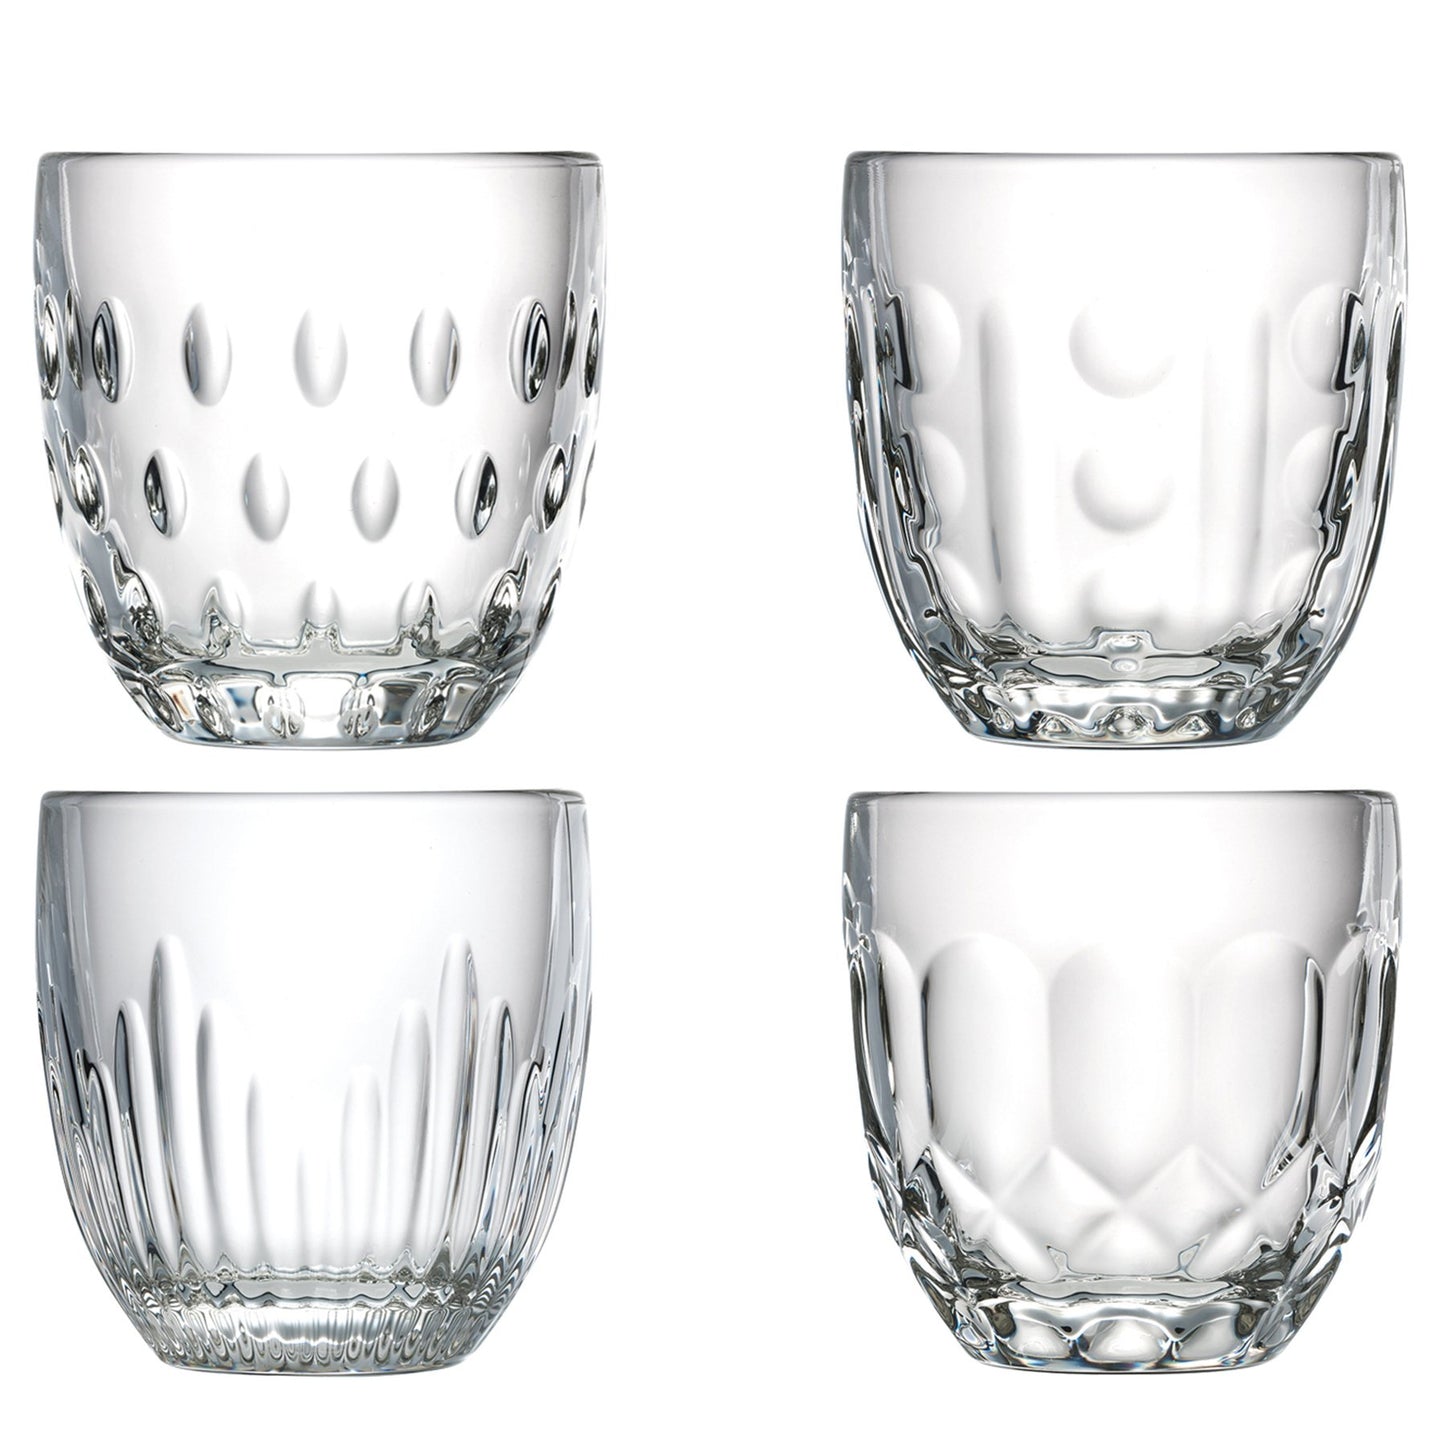 Troquet Bar and Espresso Glasses - Set of 4